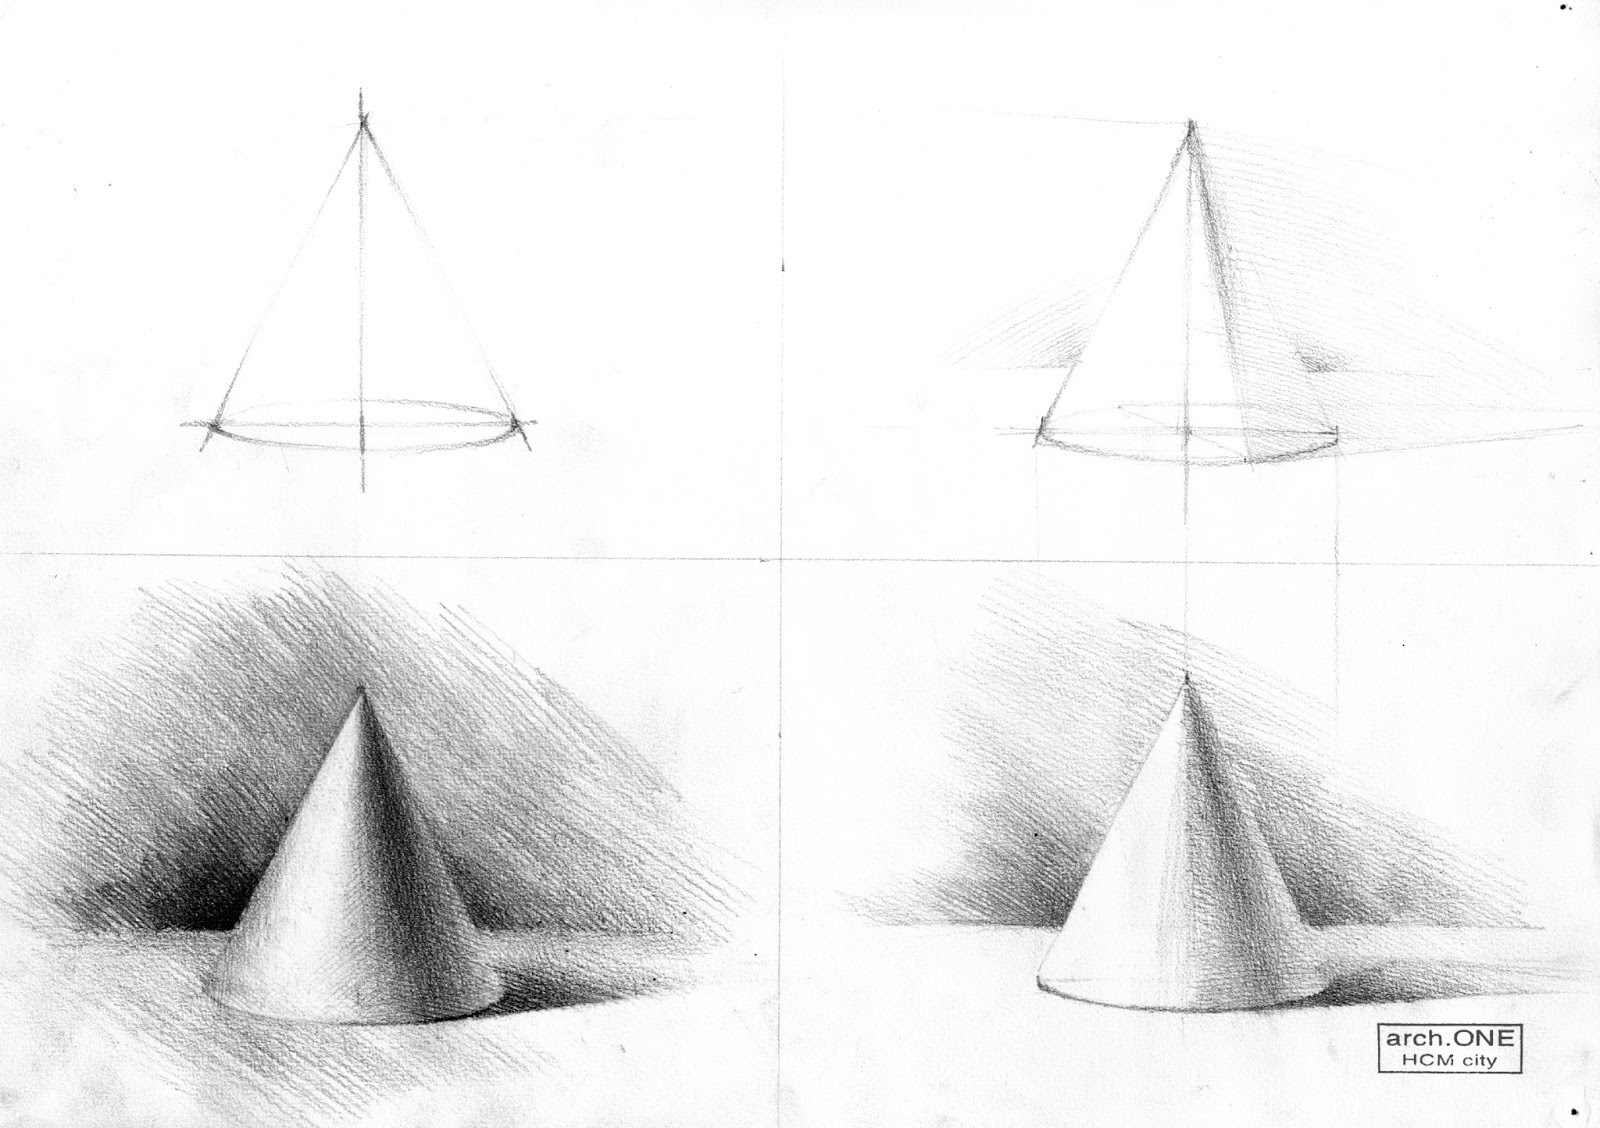 Hình chóp tam giác đều là gì tính chất hình ảnh và bài toán mẫu